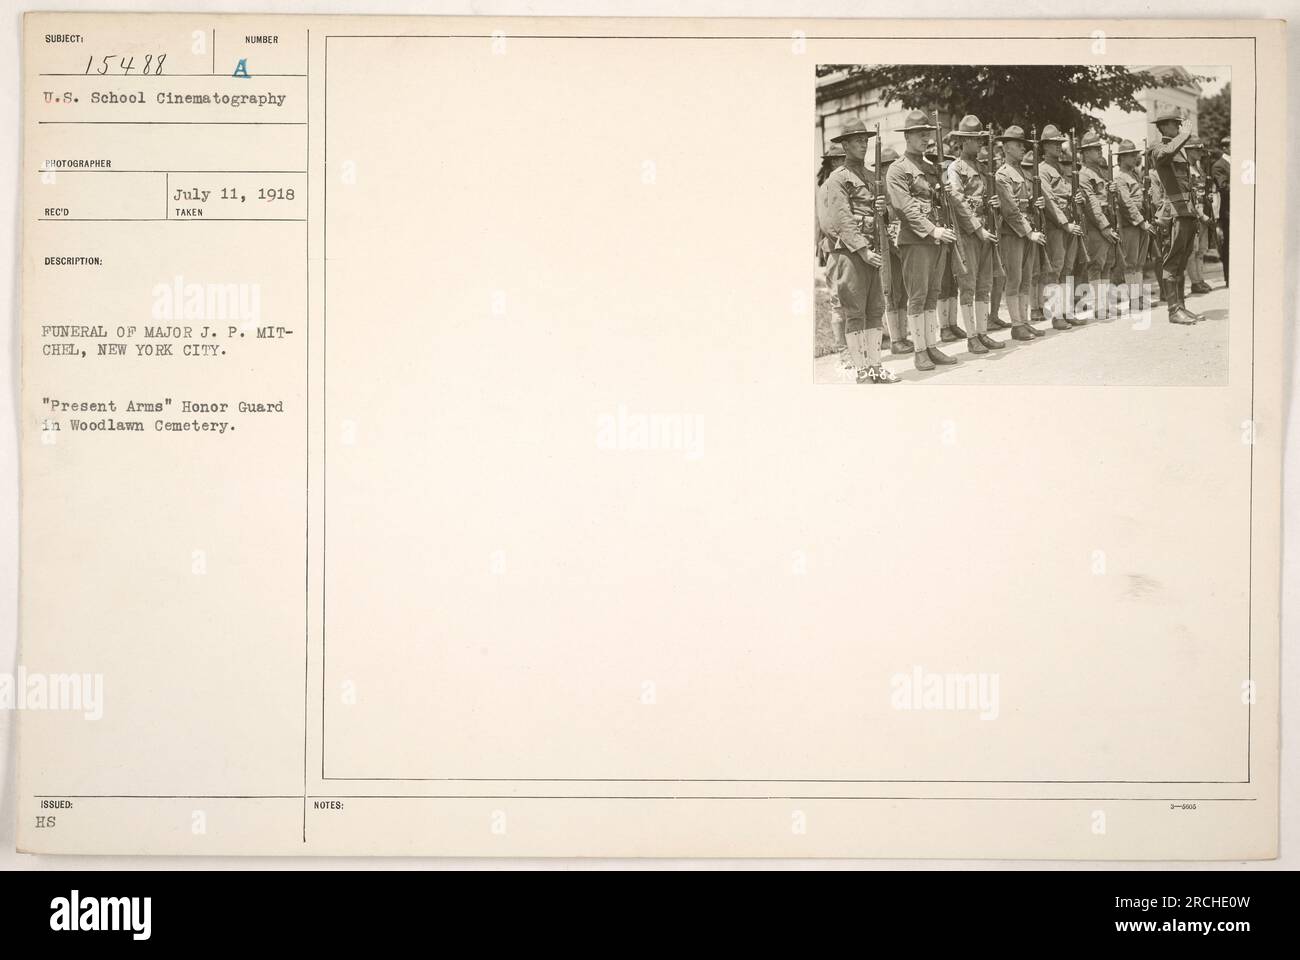 La photographie capture les funérailles du major J.P. Mitchell à New York le 11 juillet 1918. L'image montre un groupe de gardes d'honneur debout à l'attention dans le cimetière de Woodlawn, avec leurs fusils levés dans un salut d'armes actuelles. Banque D'Images